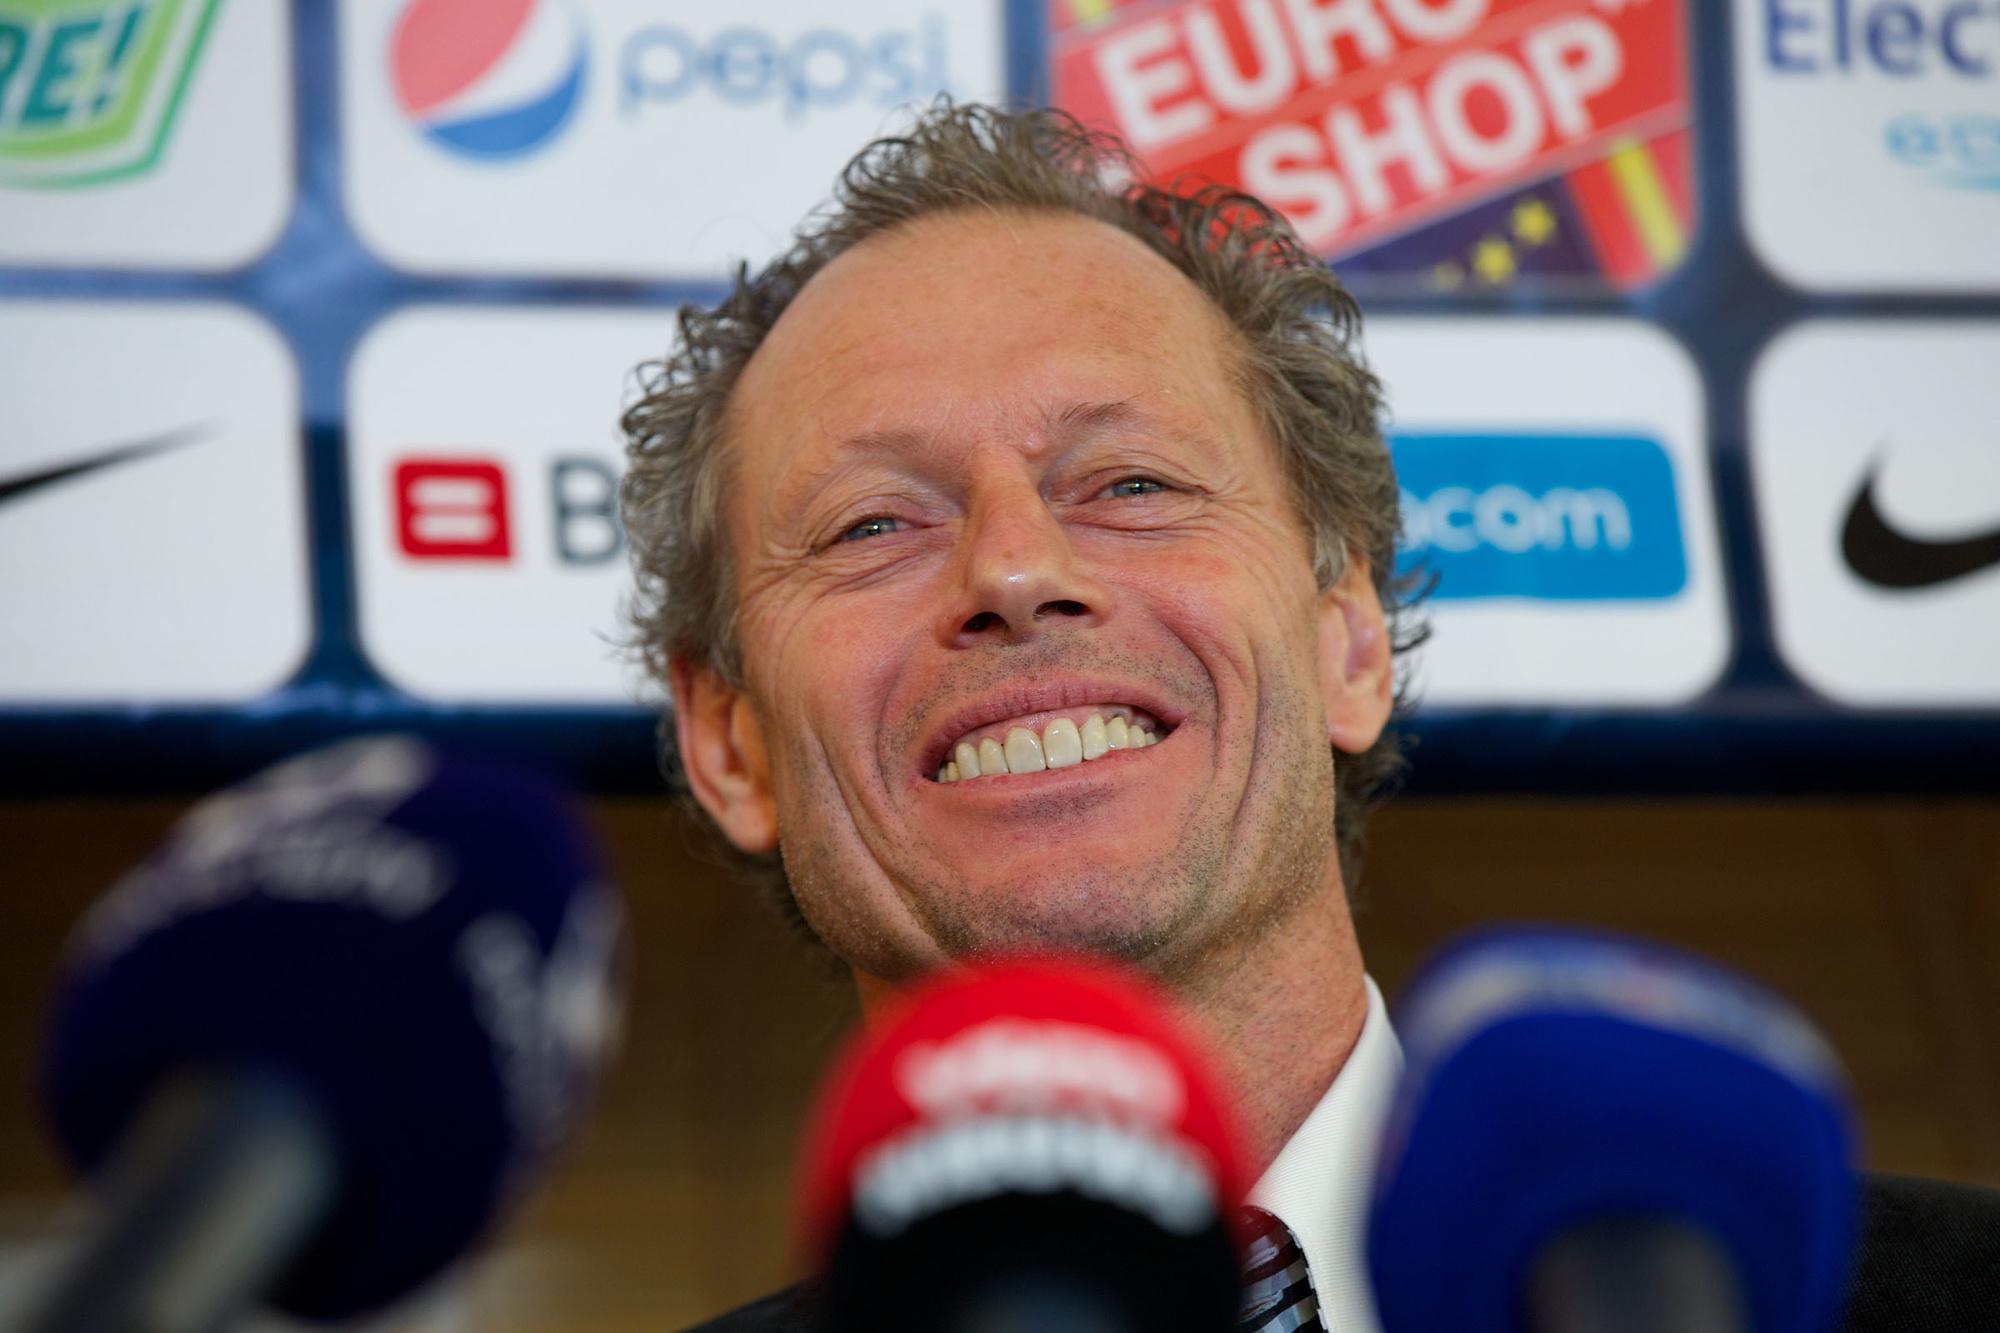 Kampioenenmakers: anekdotes over de coaches die de titel pakten met Club Brugge